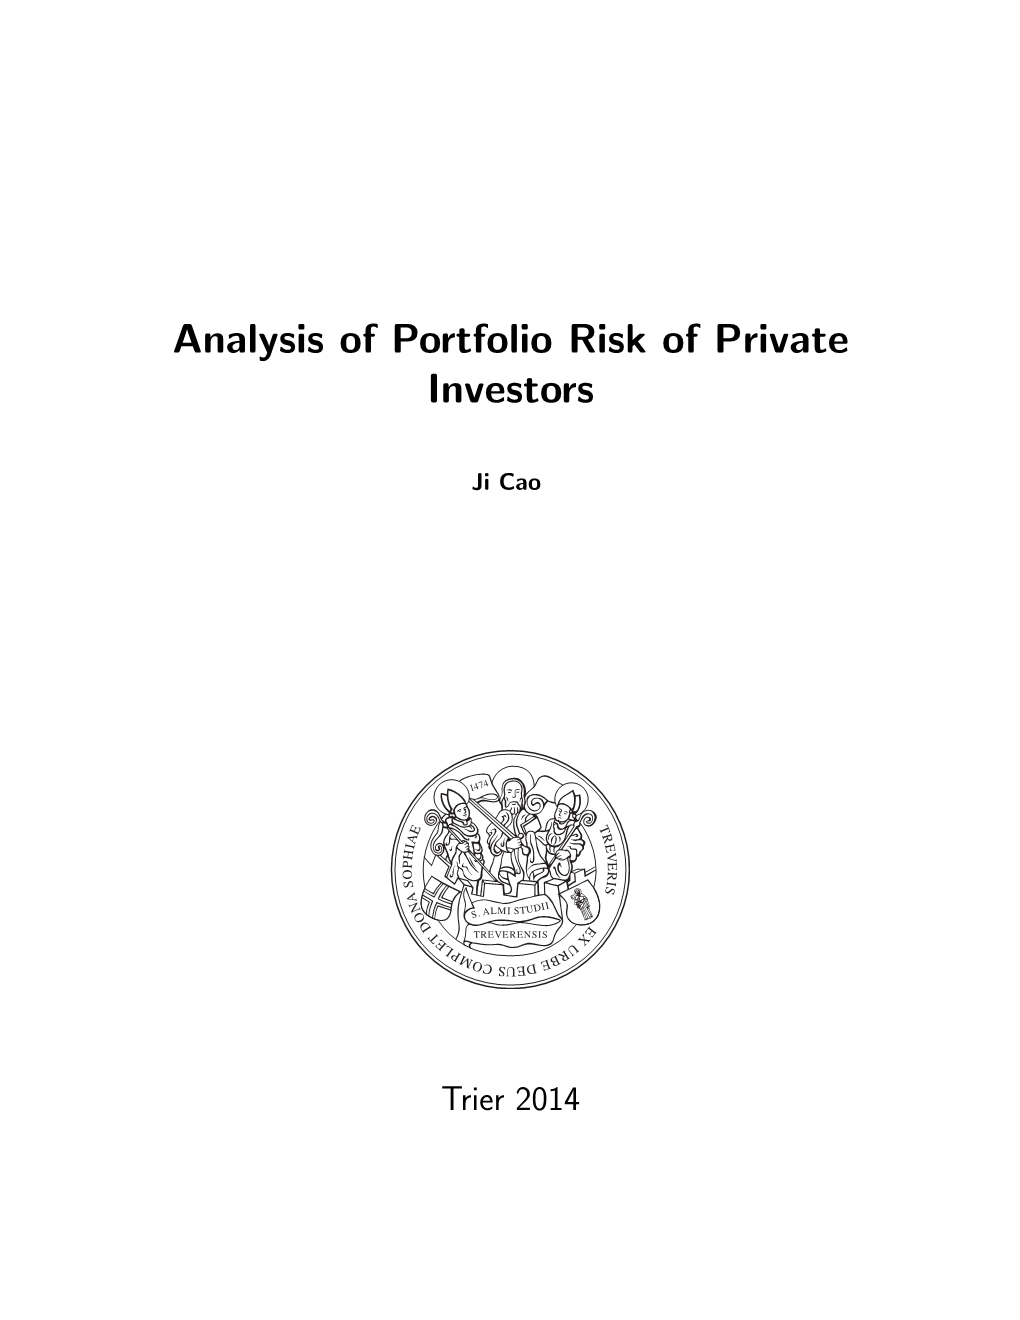 Analysis of Portfolio Risk of Private Investors